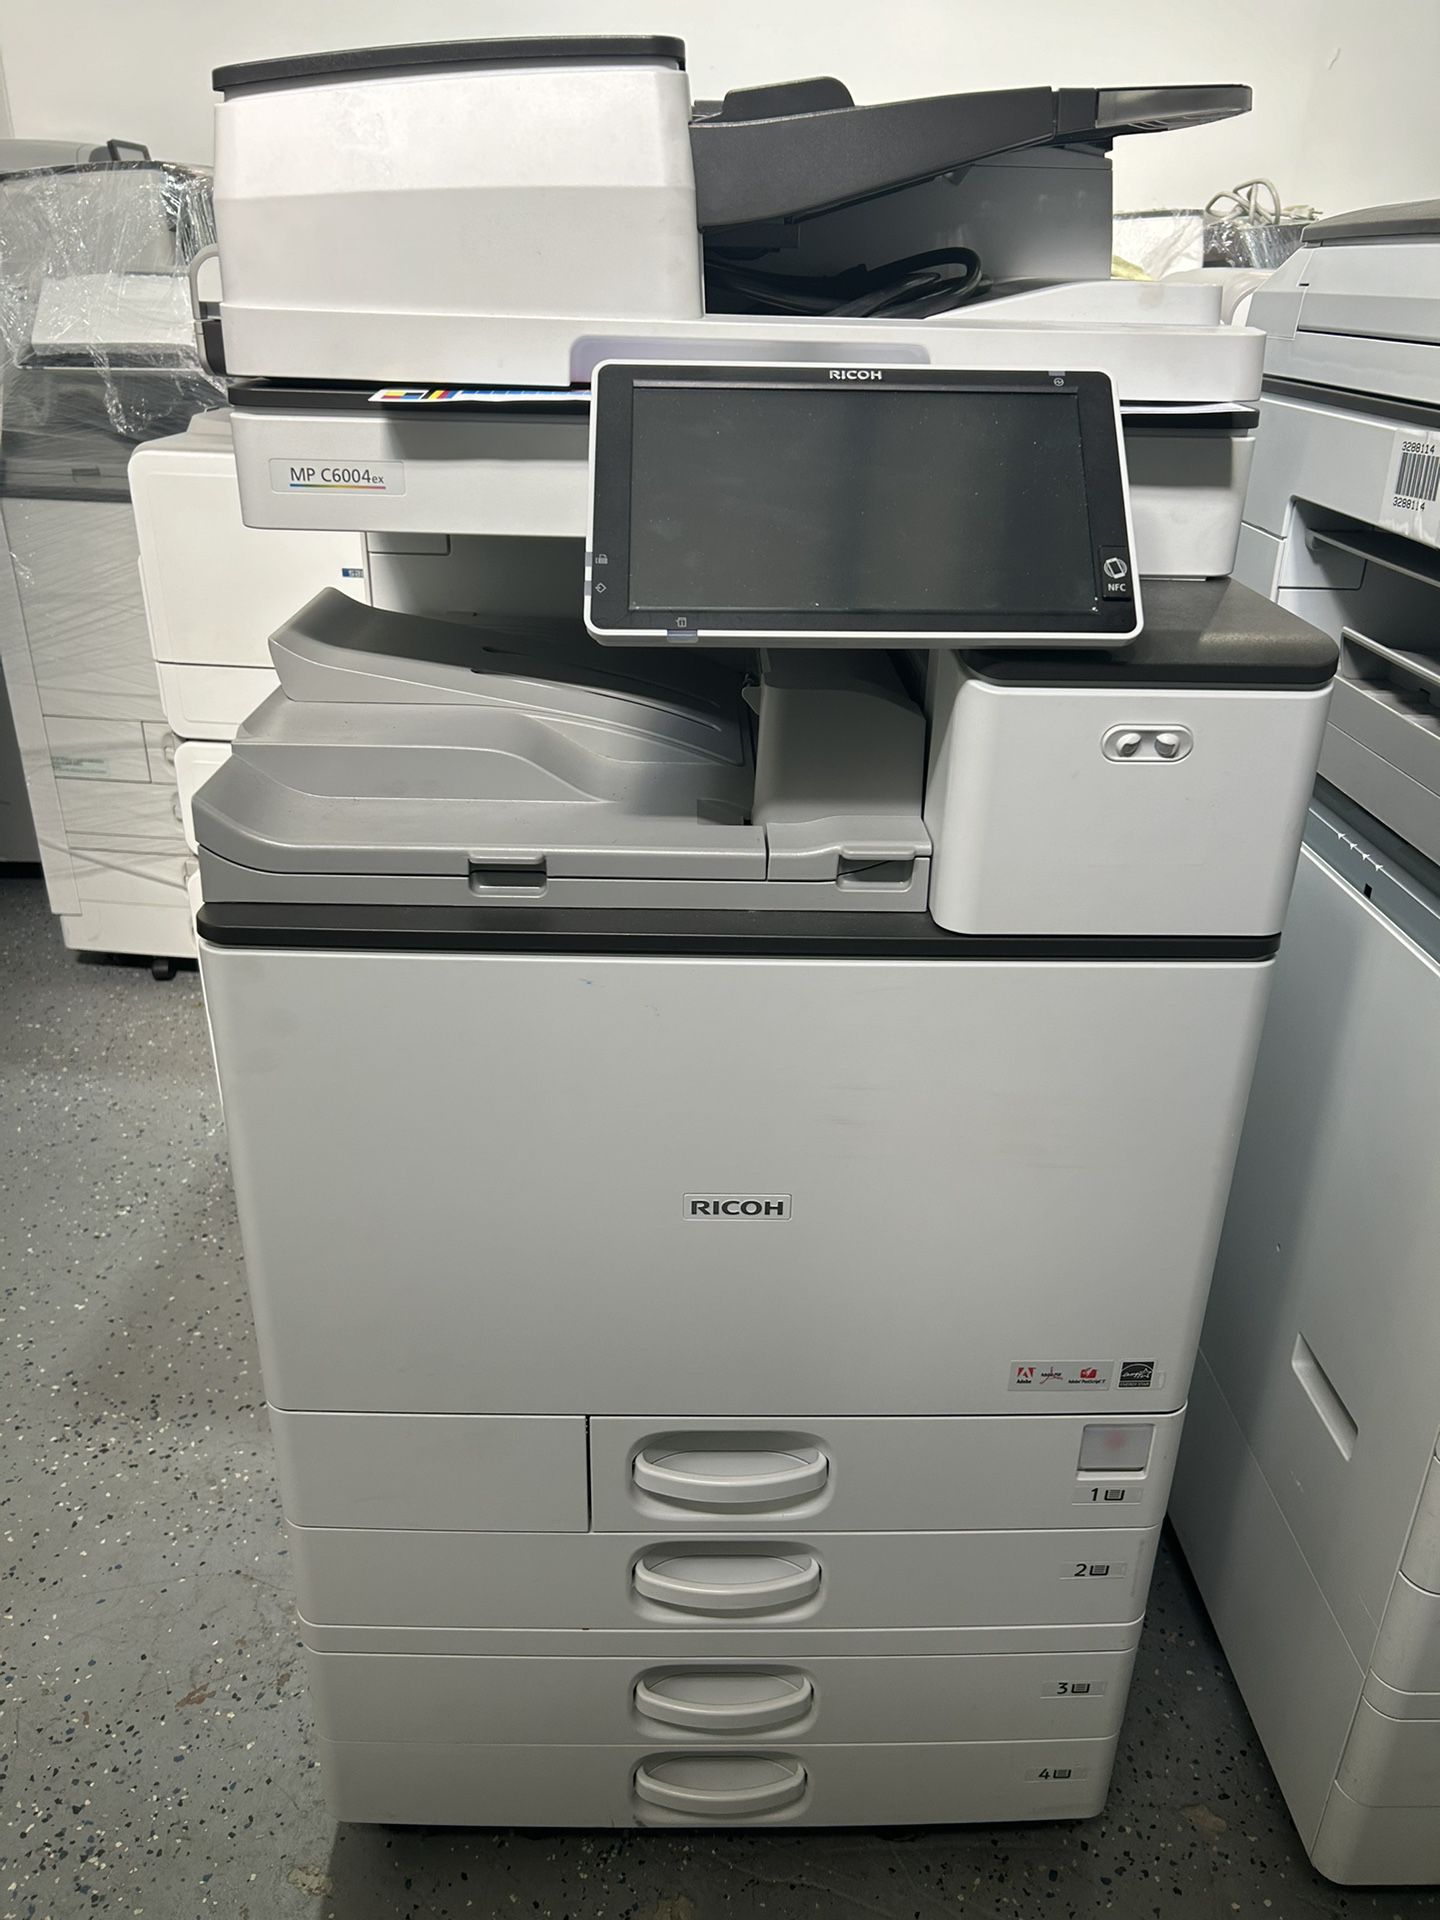 Office Printer Ricoh Mp C6004ex Color Copier Machine Laser